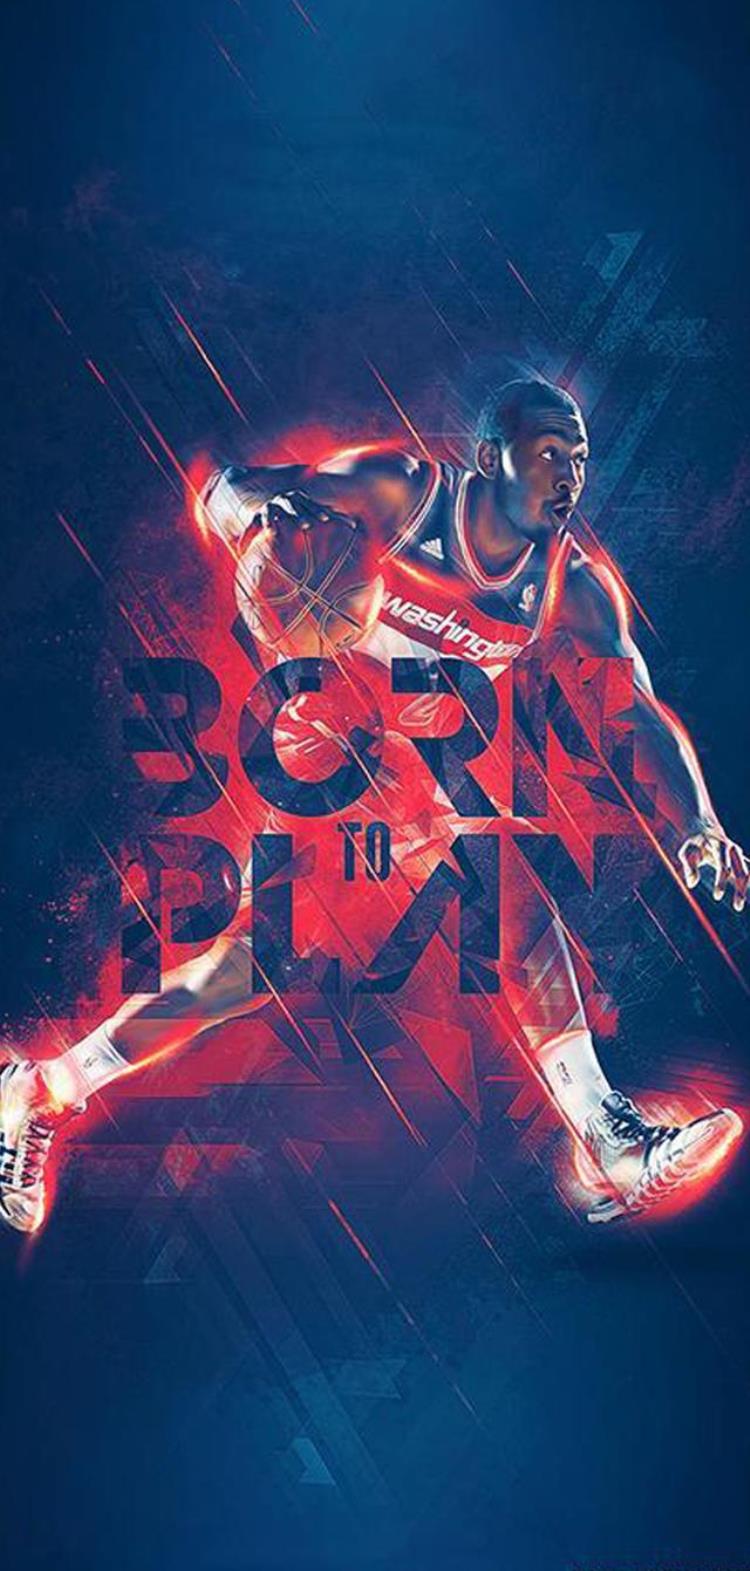 值得珍藏的一组nba球星酷炫海报「值得珍藏的一组NBA球星酷炫海报」